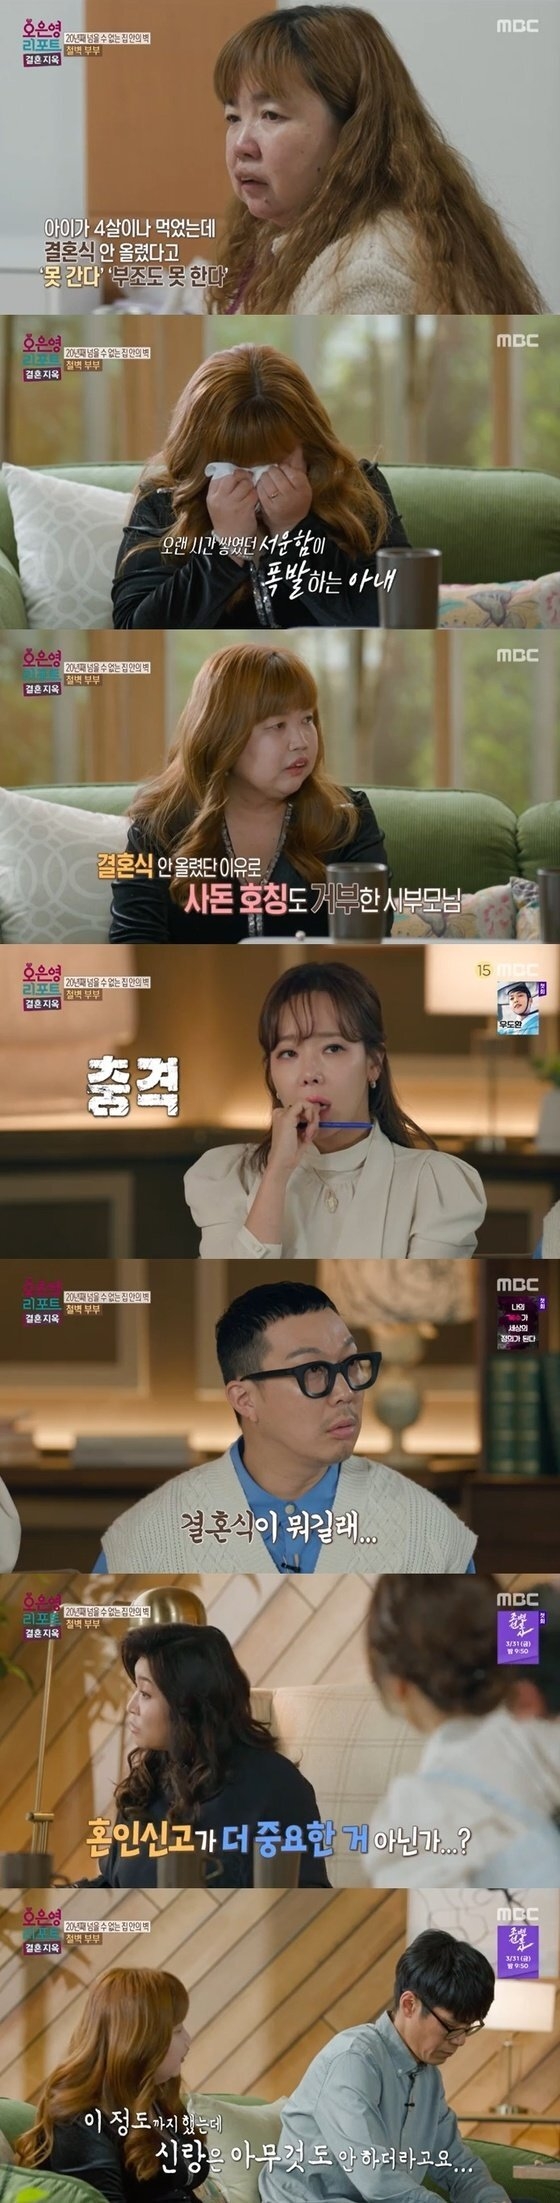 MBC 예능 프로그램 ‘오은영 리포트 - 결혼 지옥’